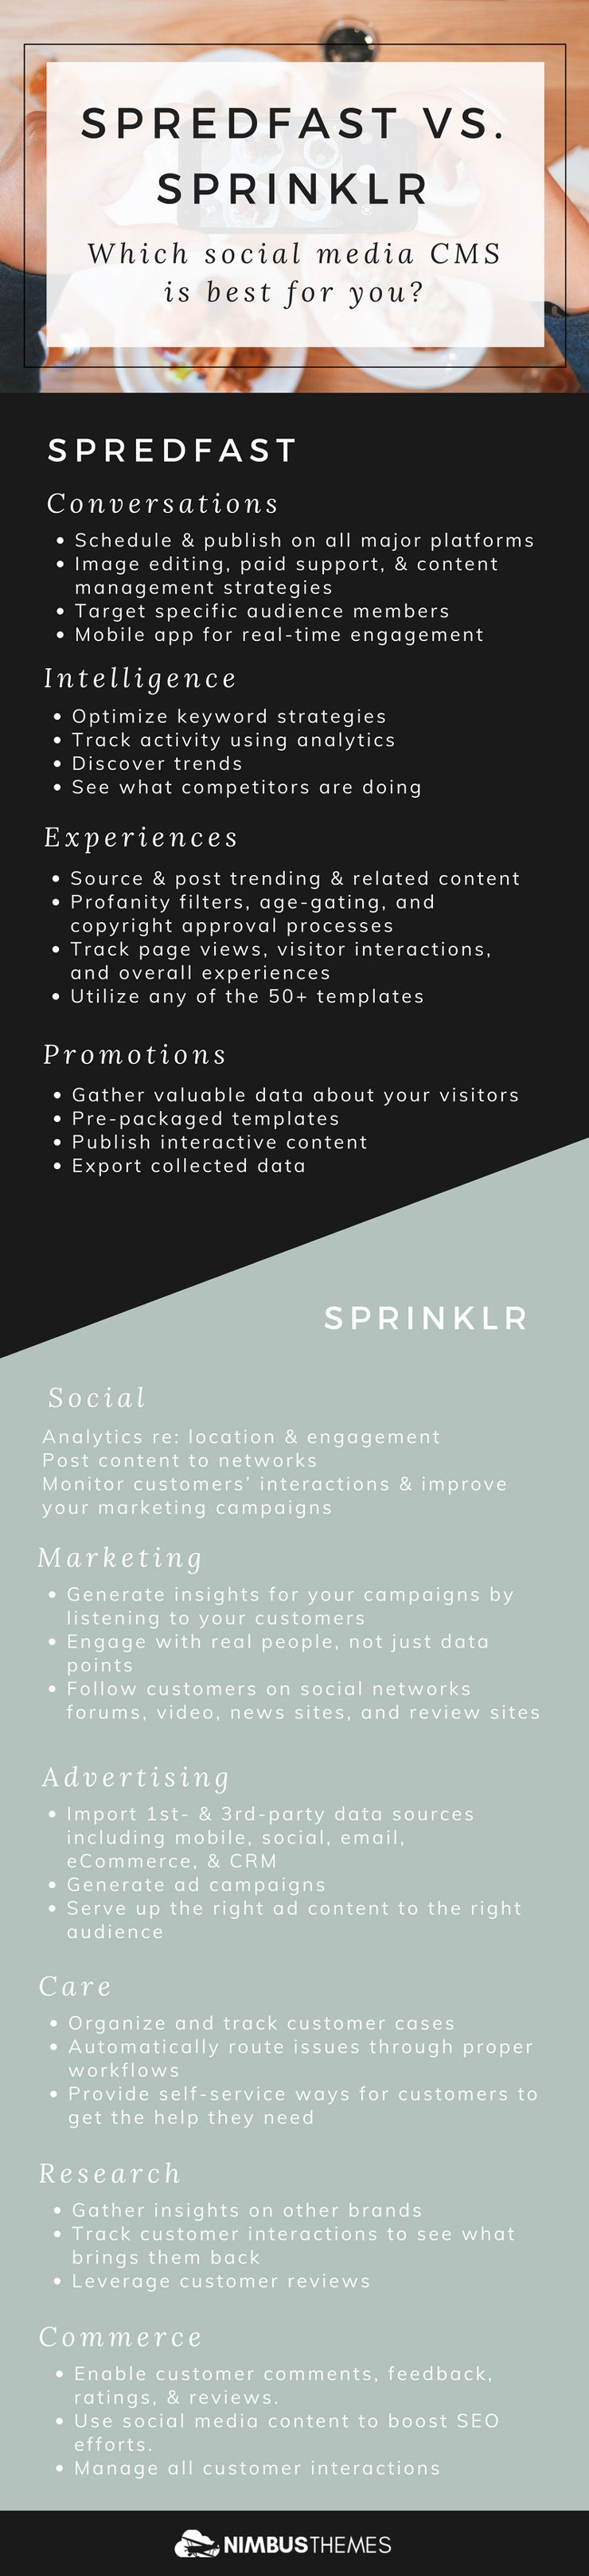 Infographic - Spredfast vs. Sprinklr